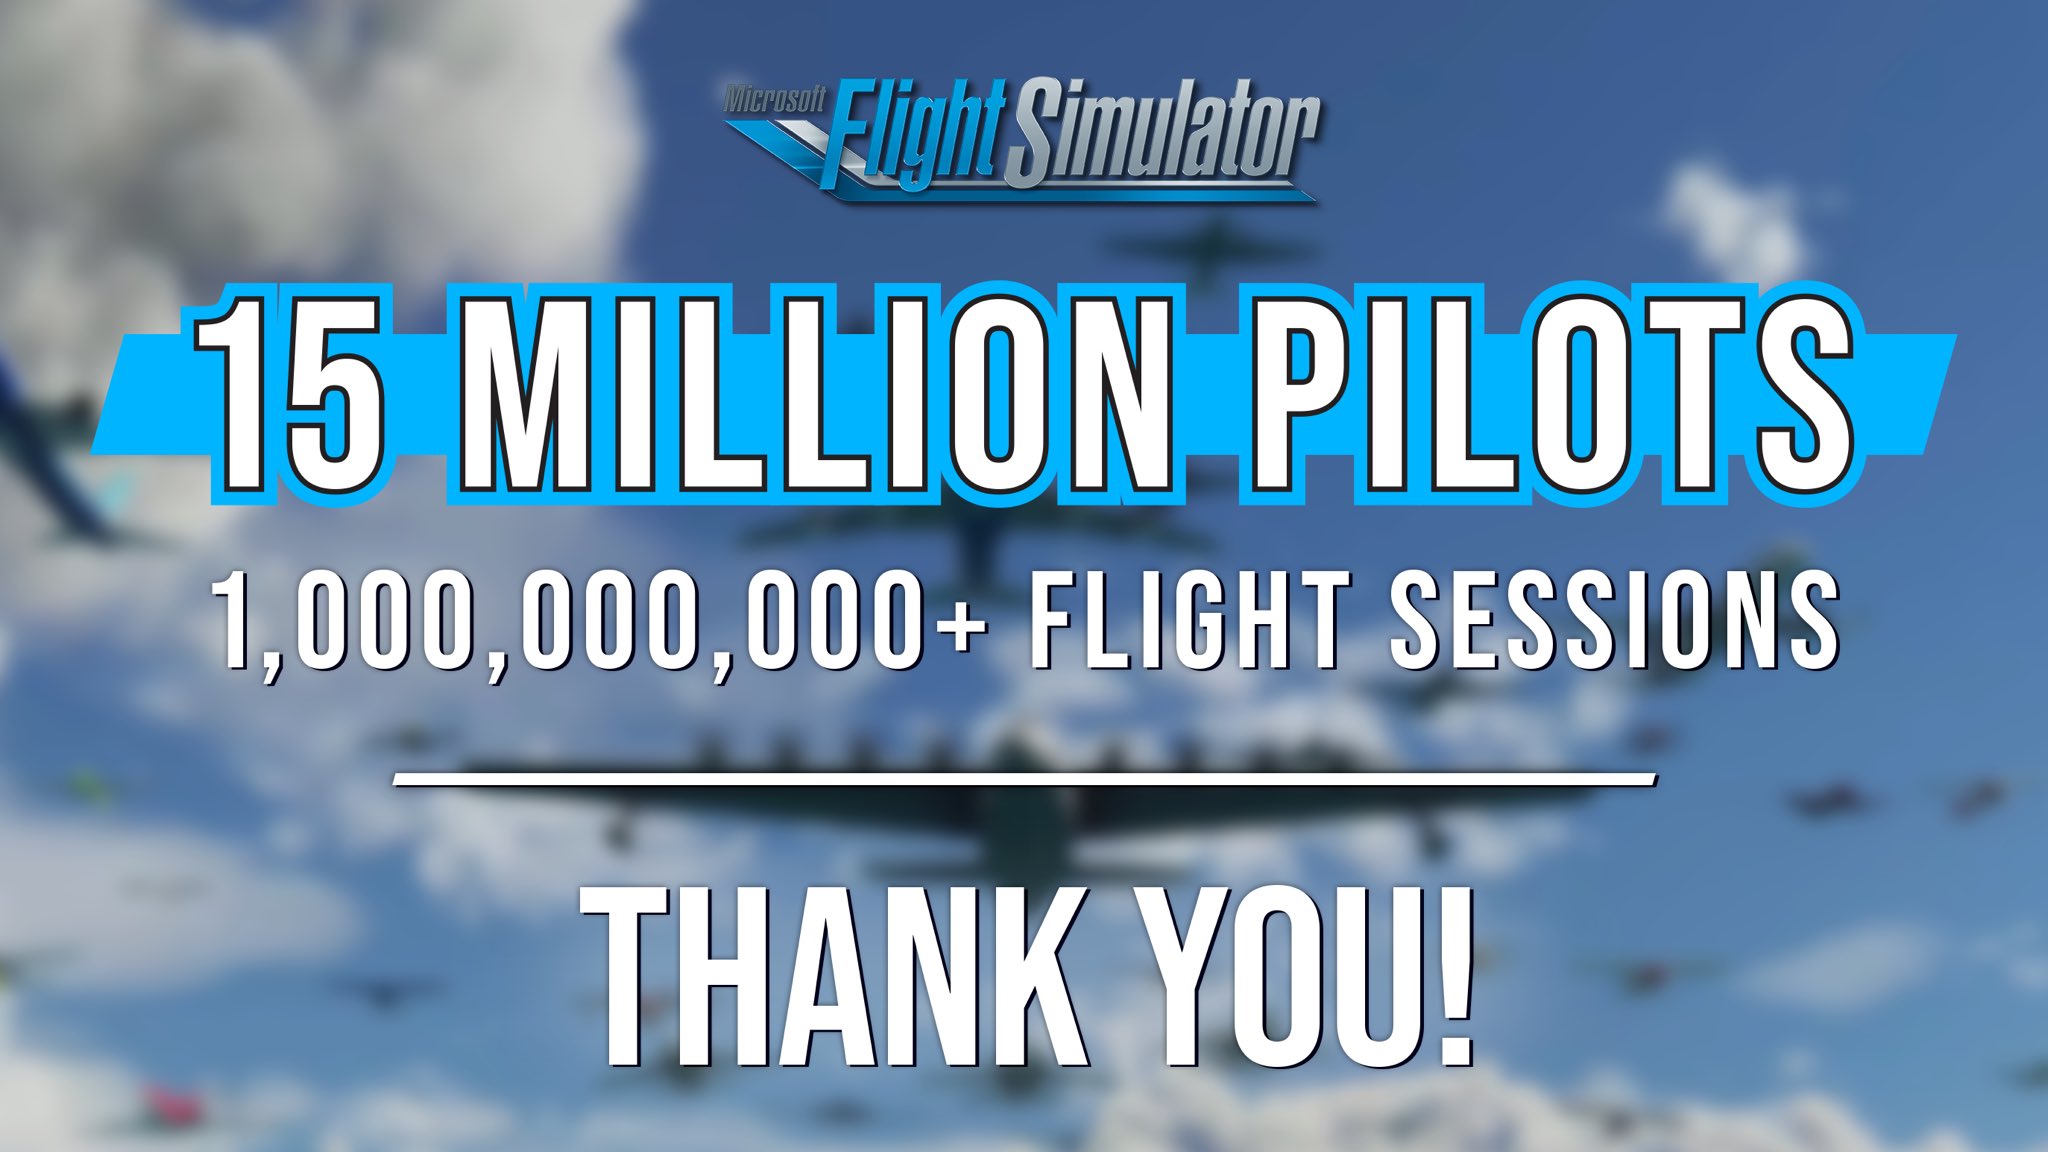 《微软模拟飞行》玩家数突破 1500 万，共进行超 10 亿次飞行